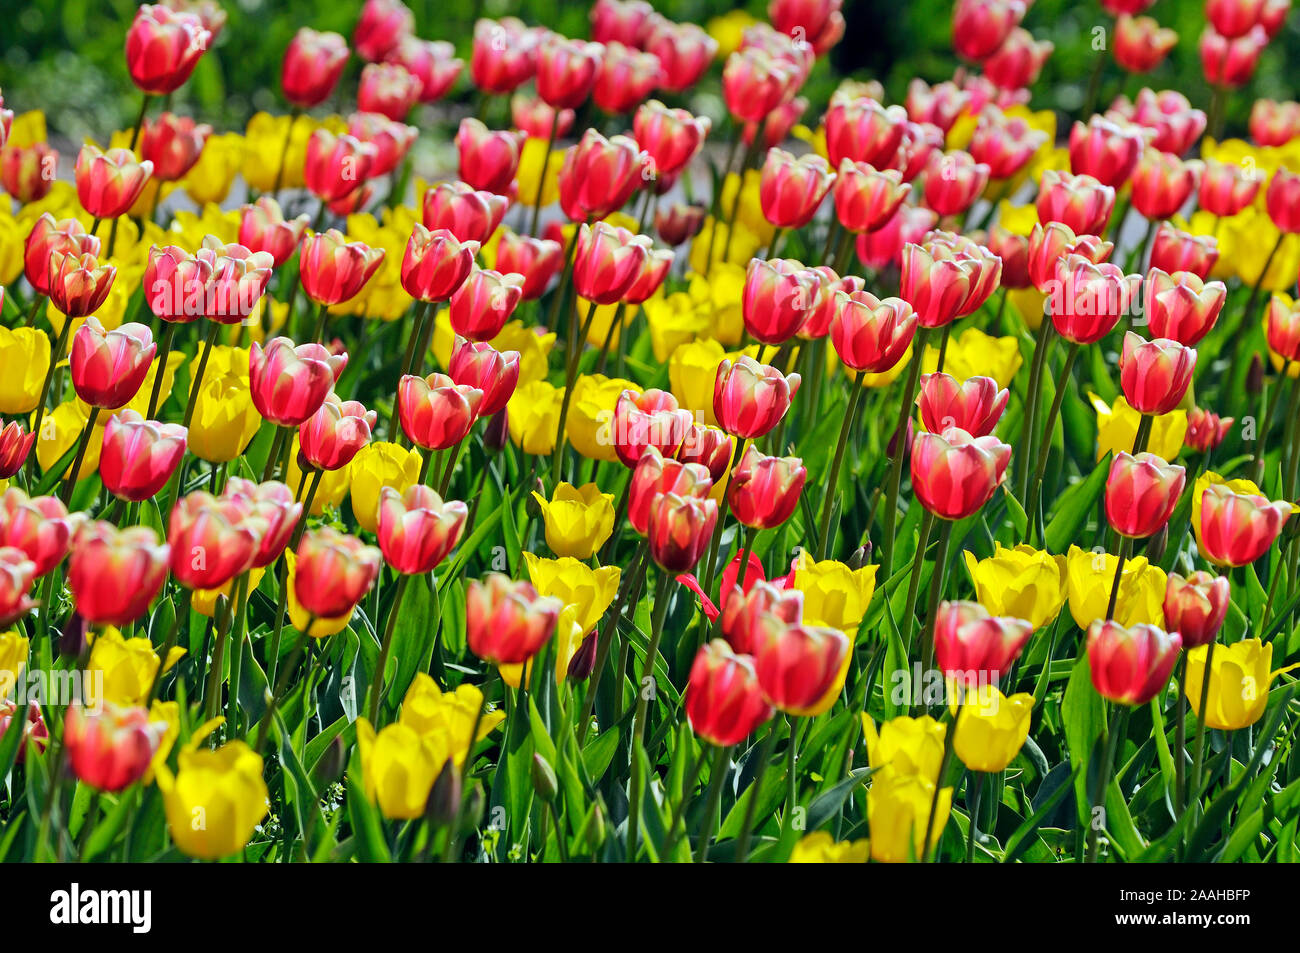 Rote und gelbe Tulpen, Tulipa spp. - Tulpenfeld Stock Photo